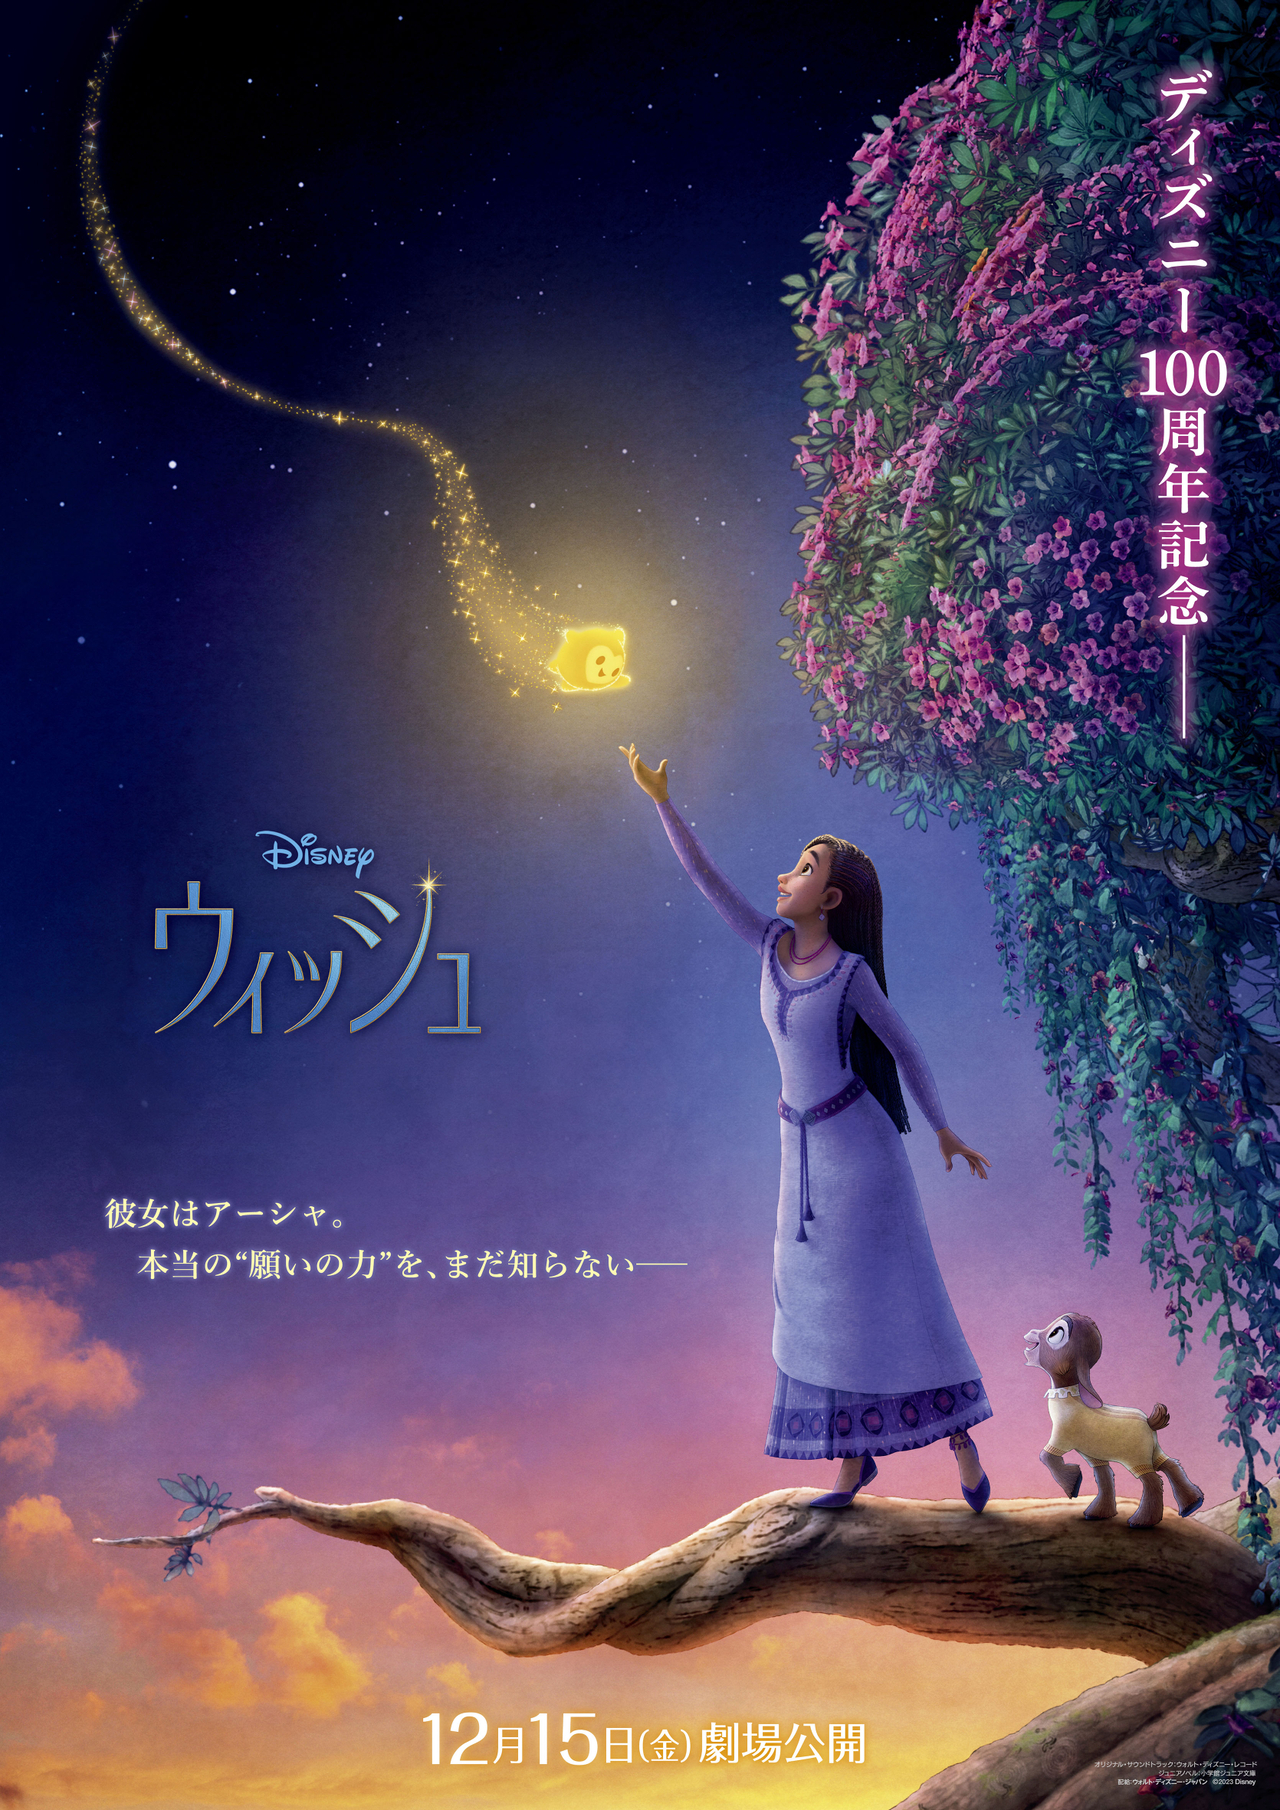 【世界初】ディズニー100周年記念作品「ウィッシュ」“日本のためだけ”に制作されたポスター公開